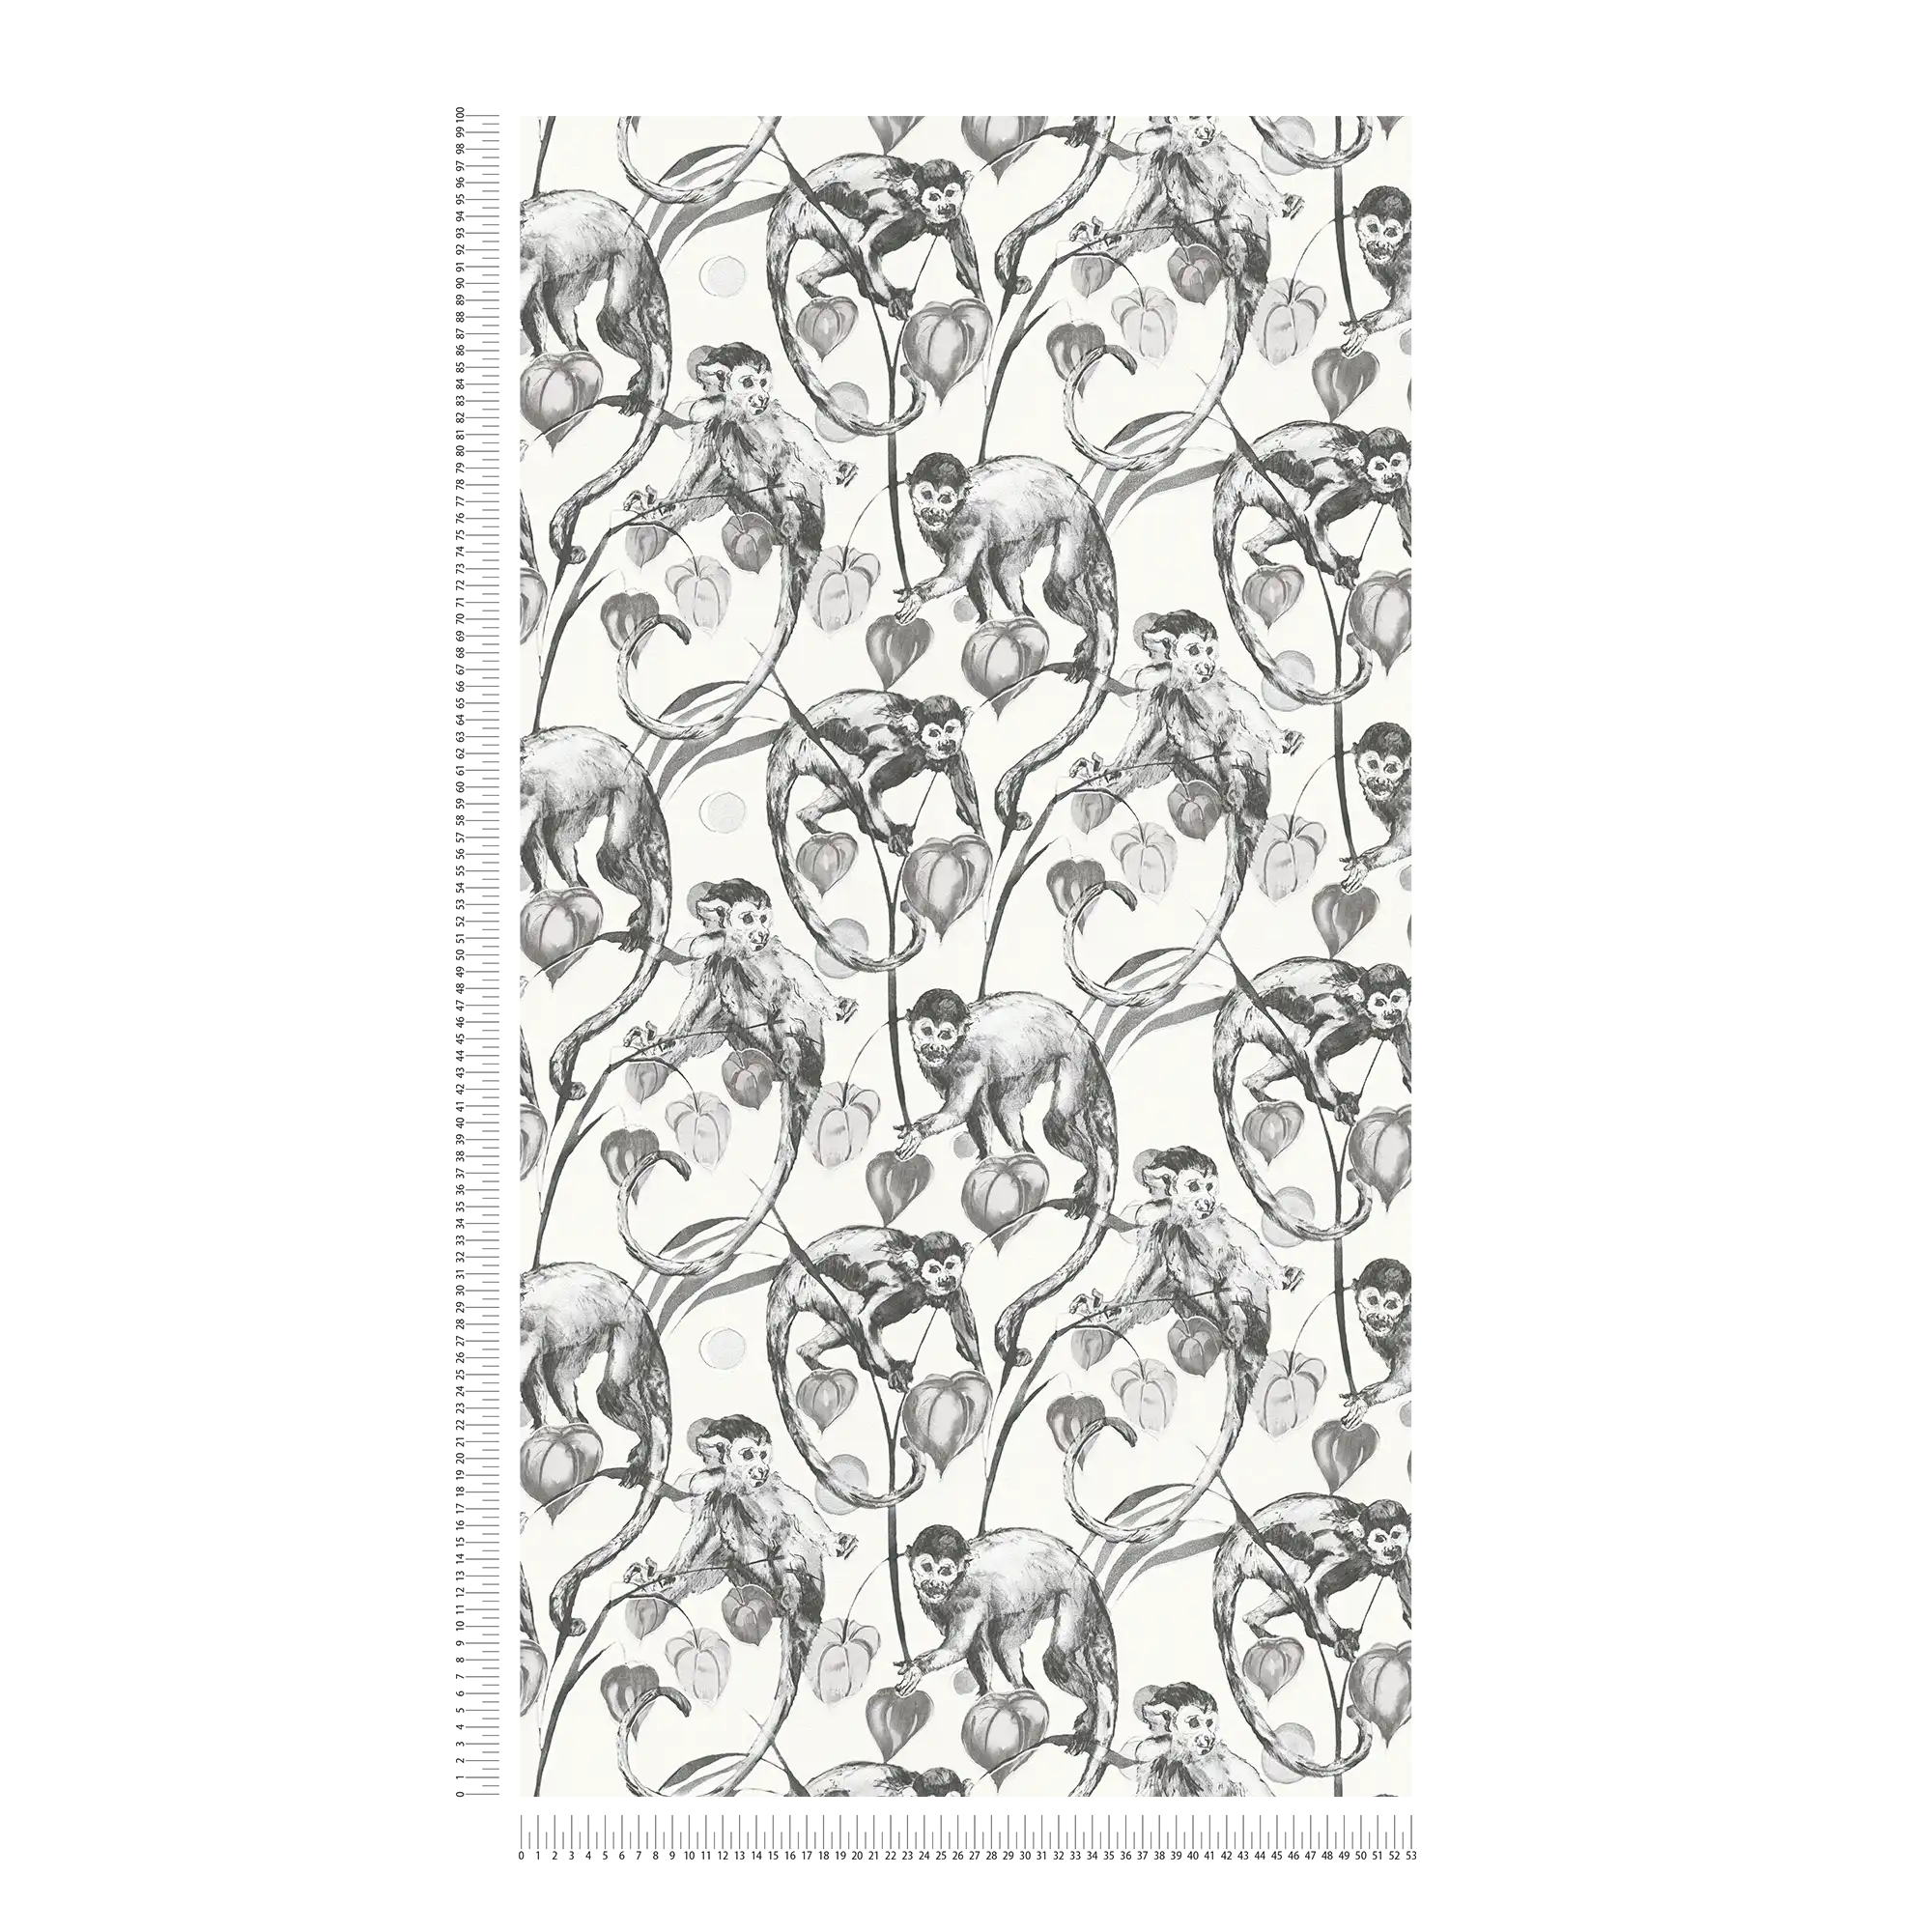             Papel pintado no tejido MICHALSKY con motivos de monos en blanco y negro
        